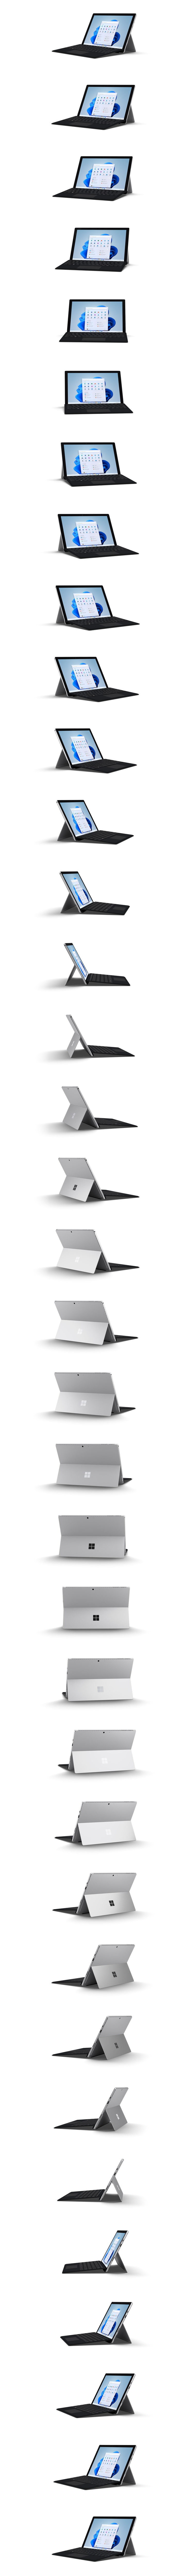 Surface Pro 7+ visas i en 360 graders rotation.